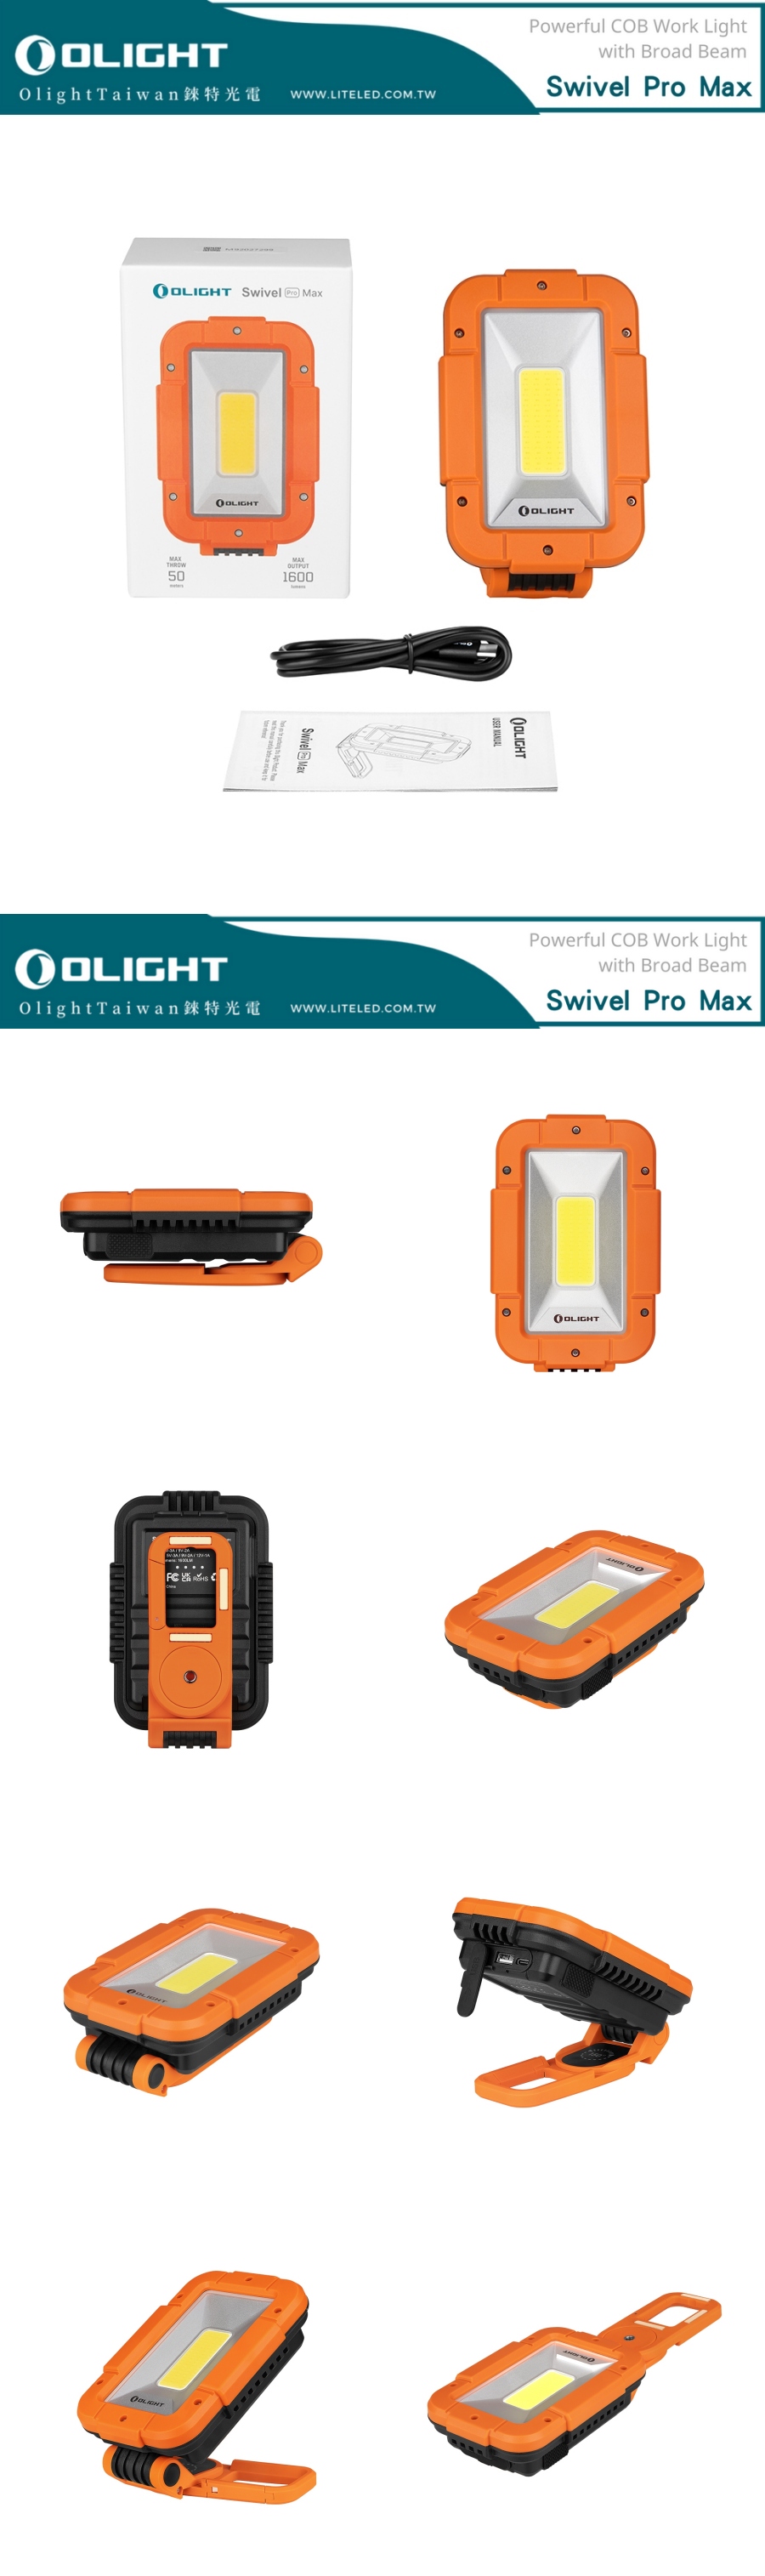 【錸特光電】OLIGHT SWIVEL PRO MAX 1600流明 COB工作燈 高顯色 USB-C充電 手電筒 防水 18W快充 Type-C l OLIGHT台灣總代理 台灣現貨 代理商 公司貨 原廠保固 COB Floodlight Work Light  (7)